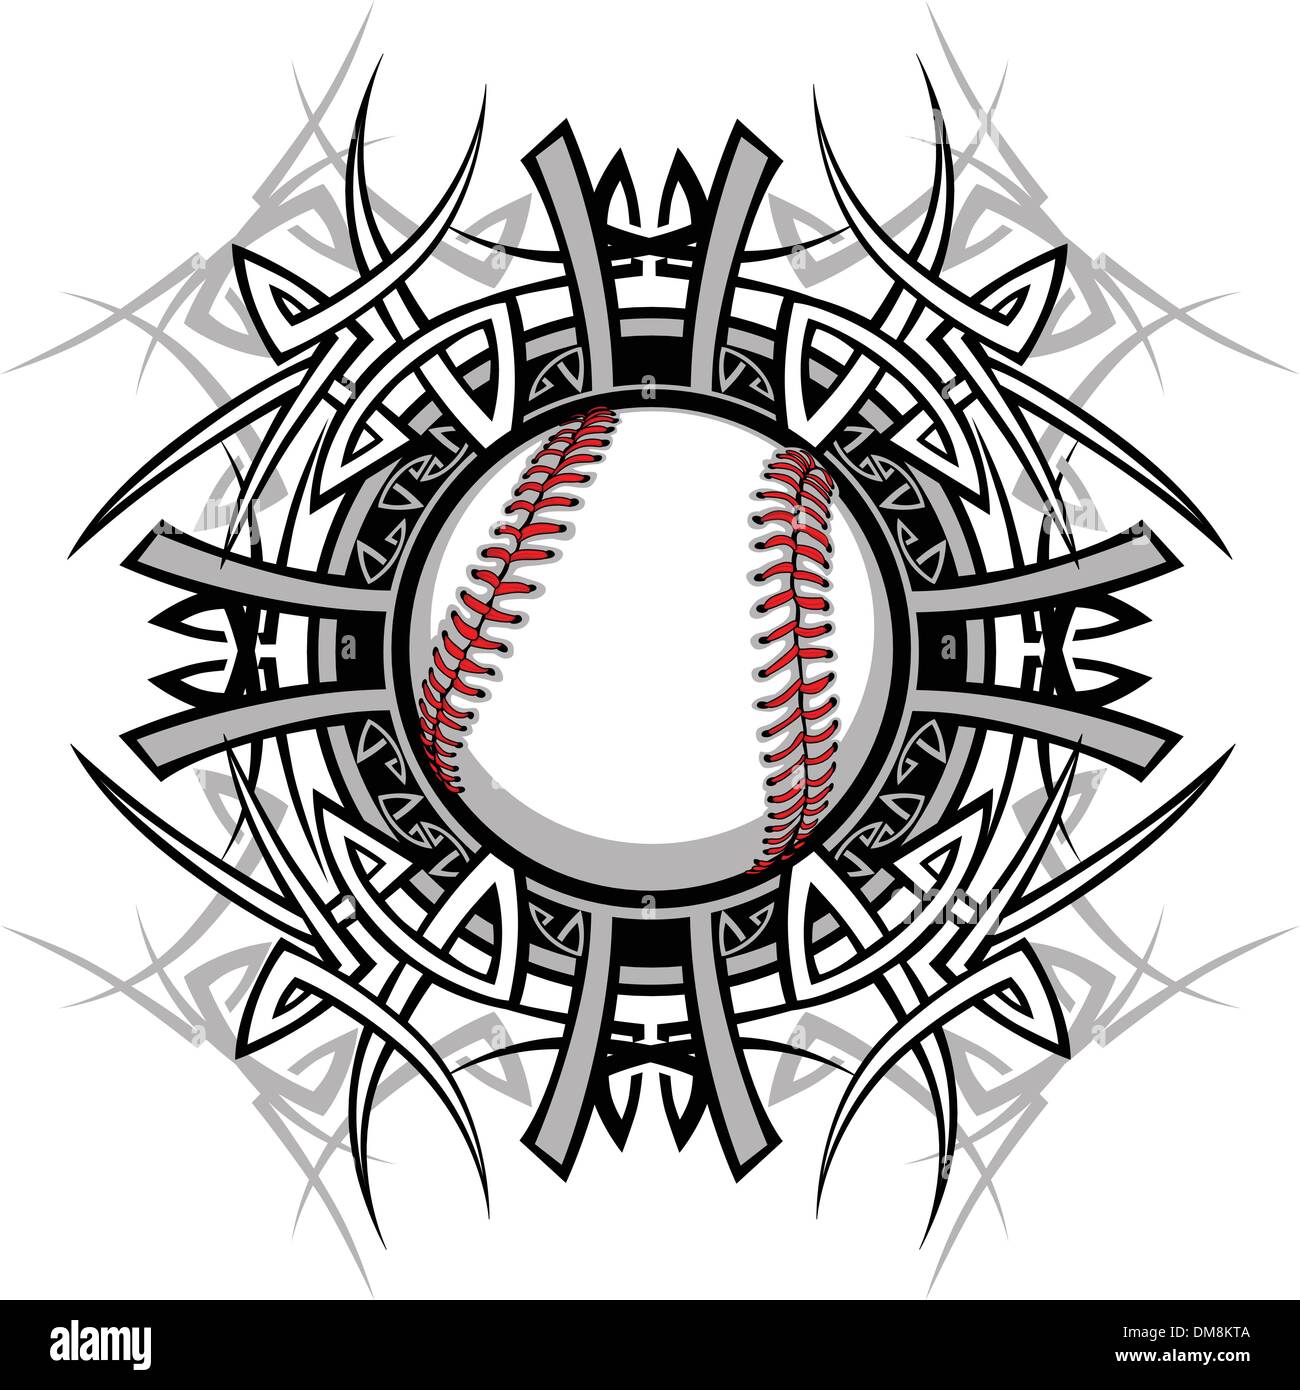 Baseball & Softball Designs